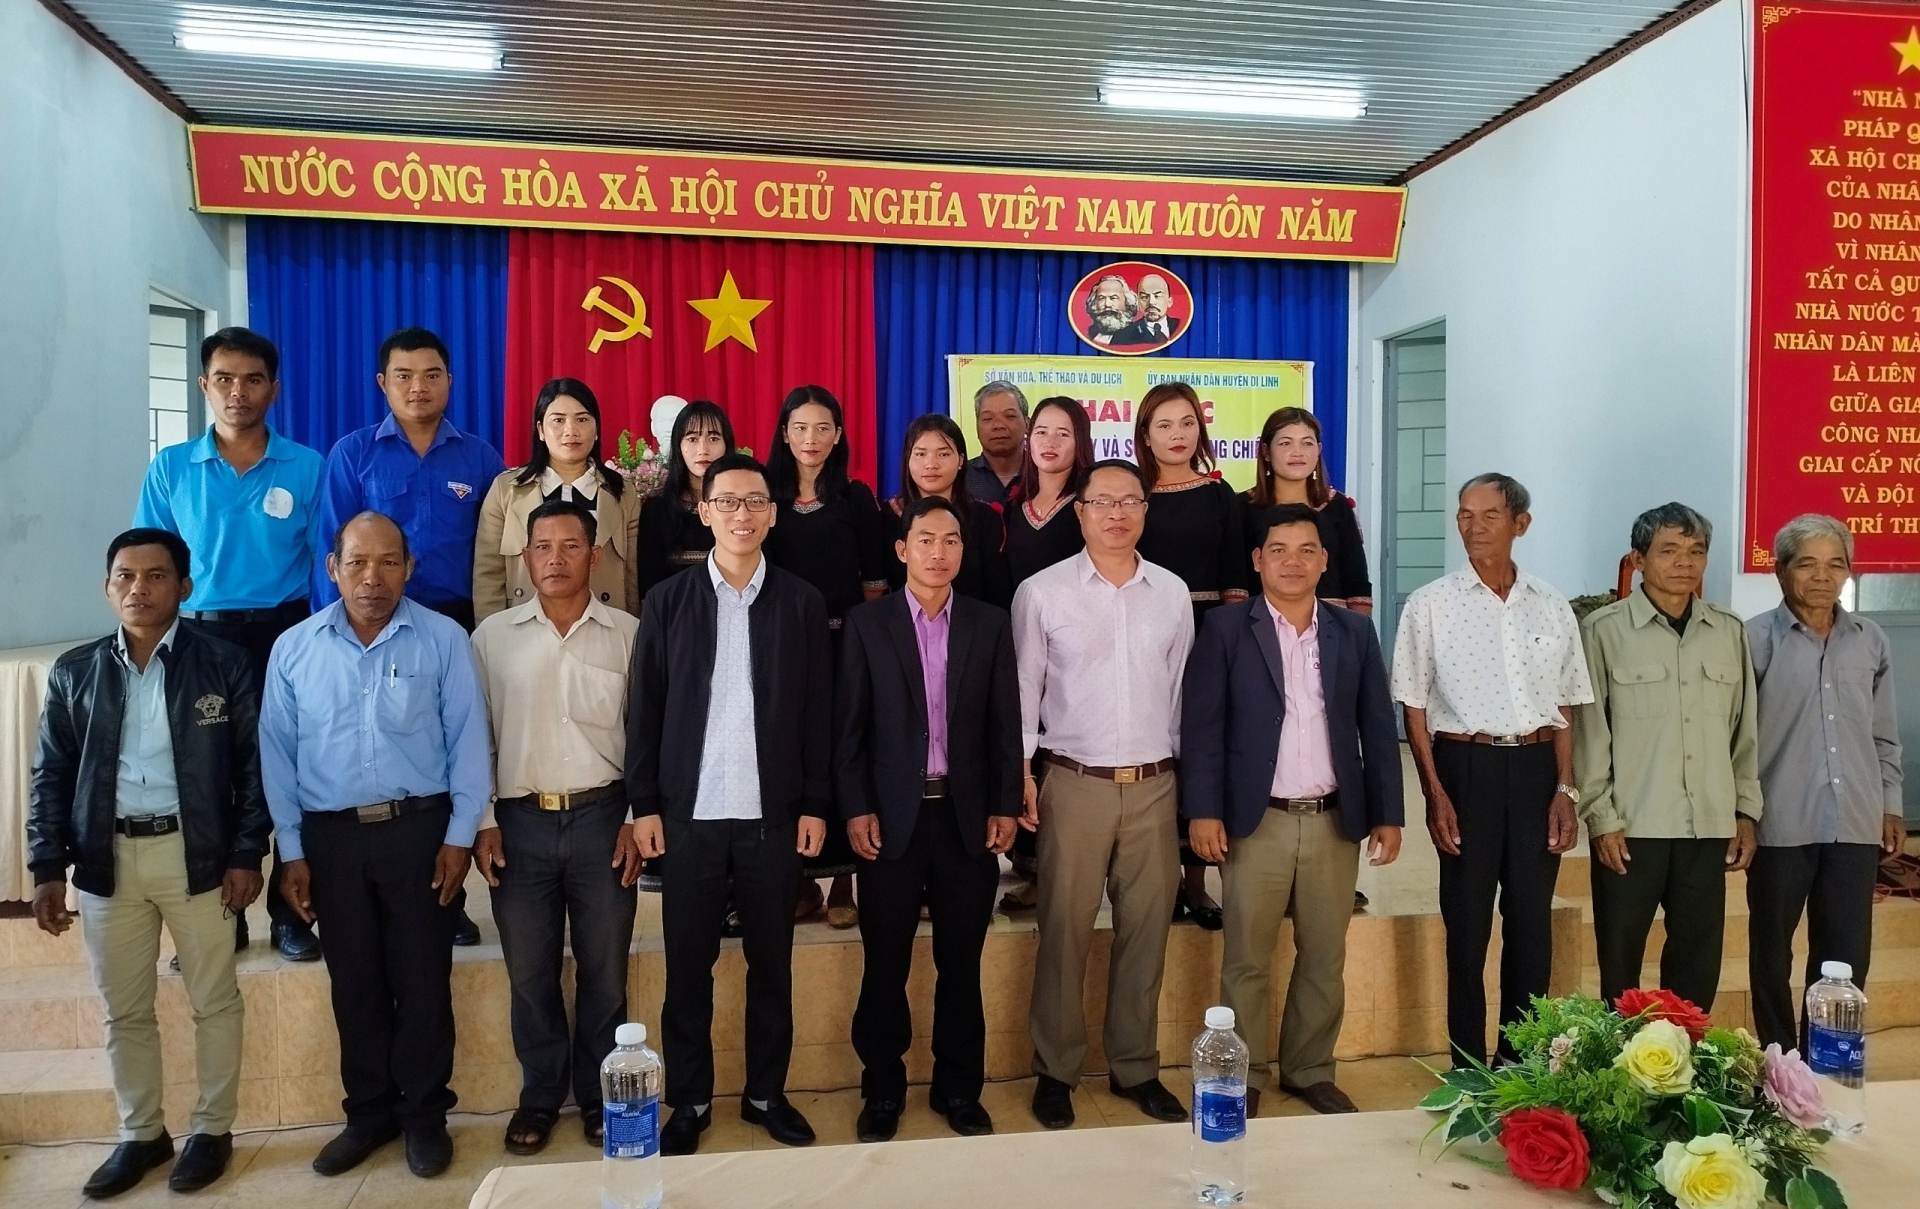 Sở Văn hoá - Thể thao và Du lịch tỉnh mở lớp truyền dạy sử dụng cồng chiêng tại Di Linh